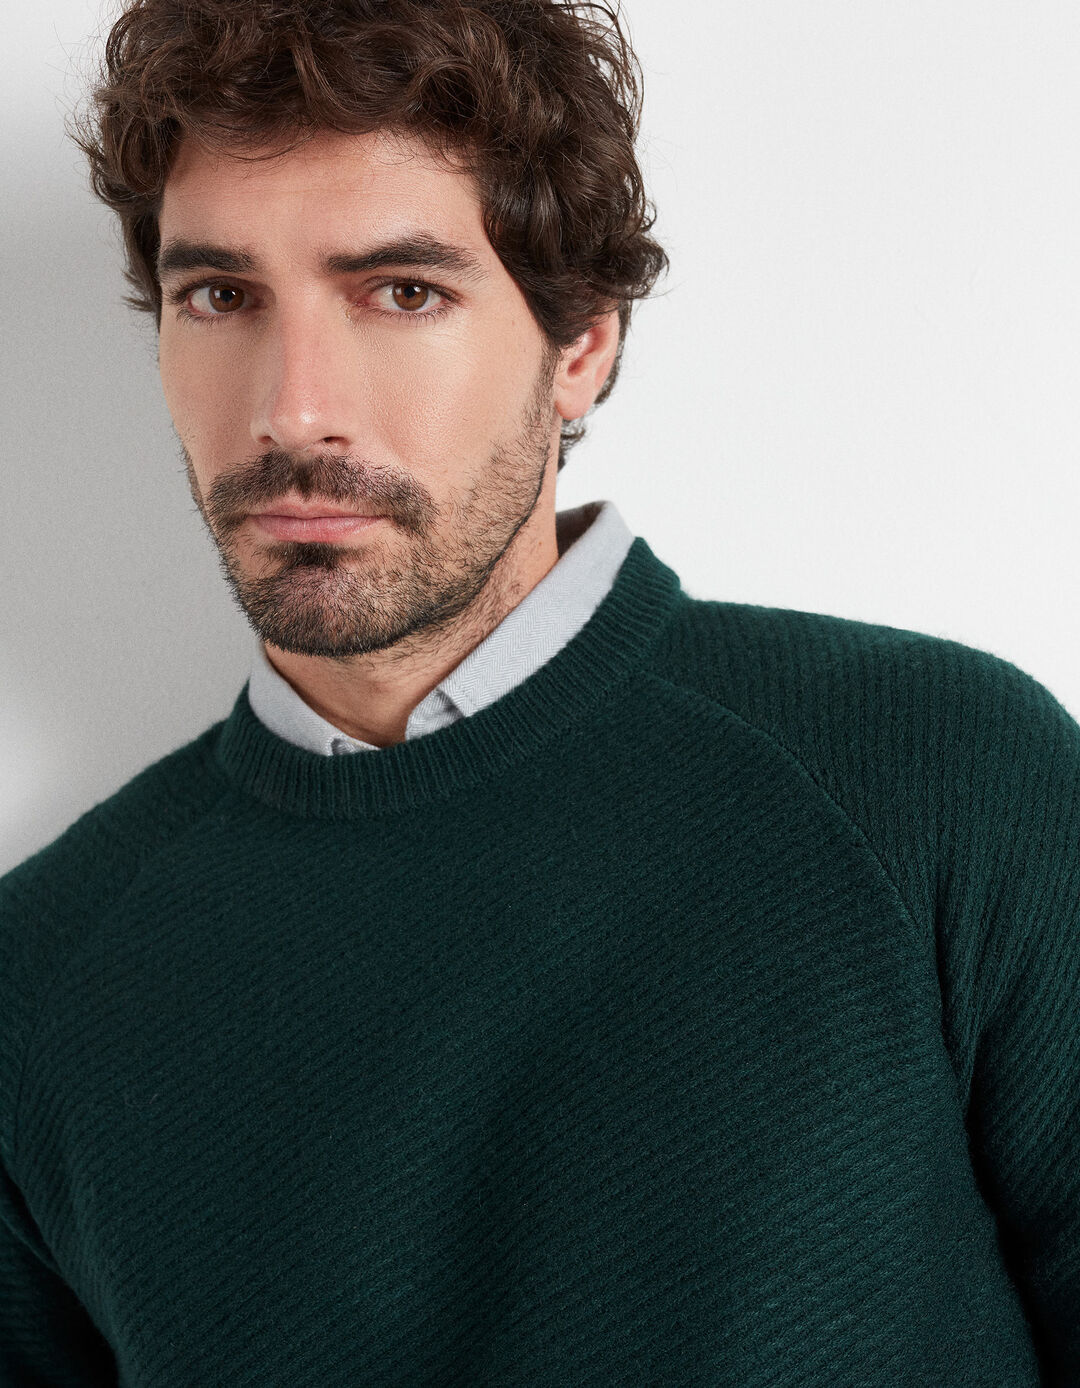 Wool Blend Sweater, Men, Green